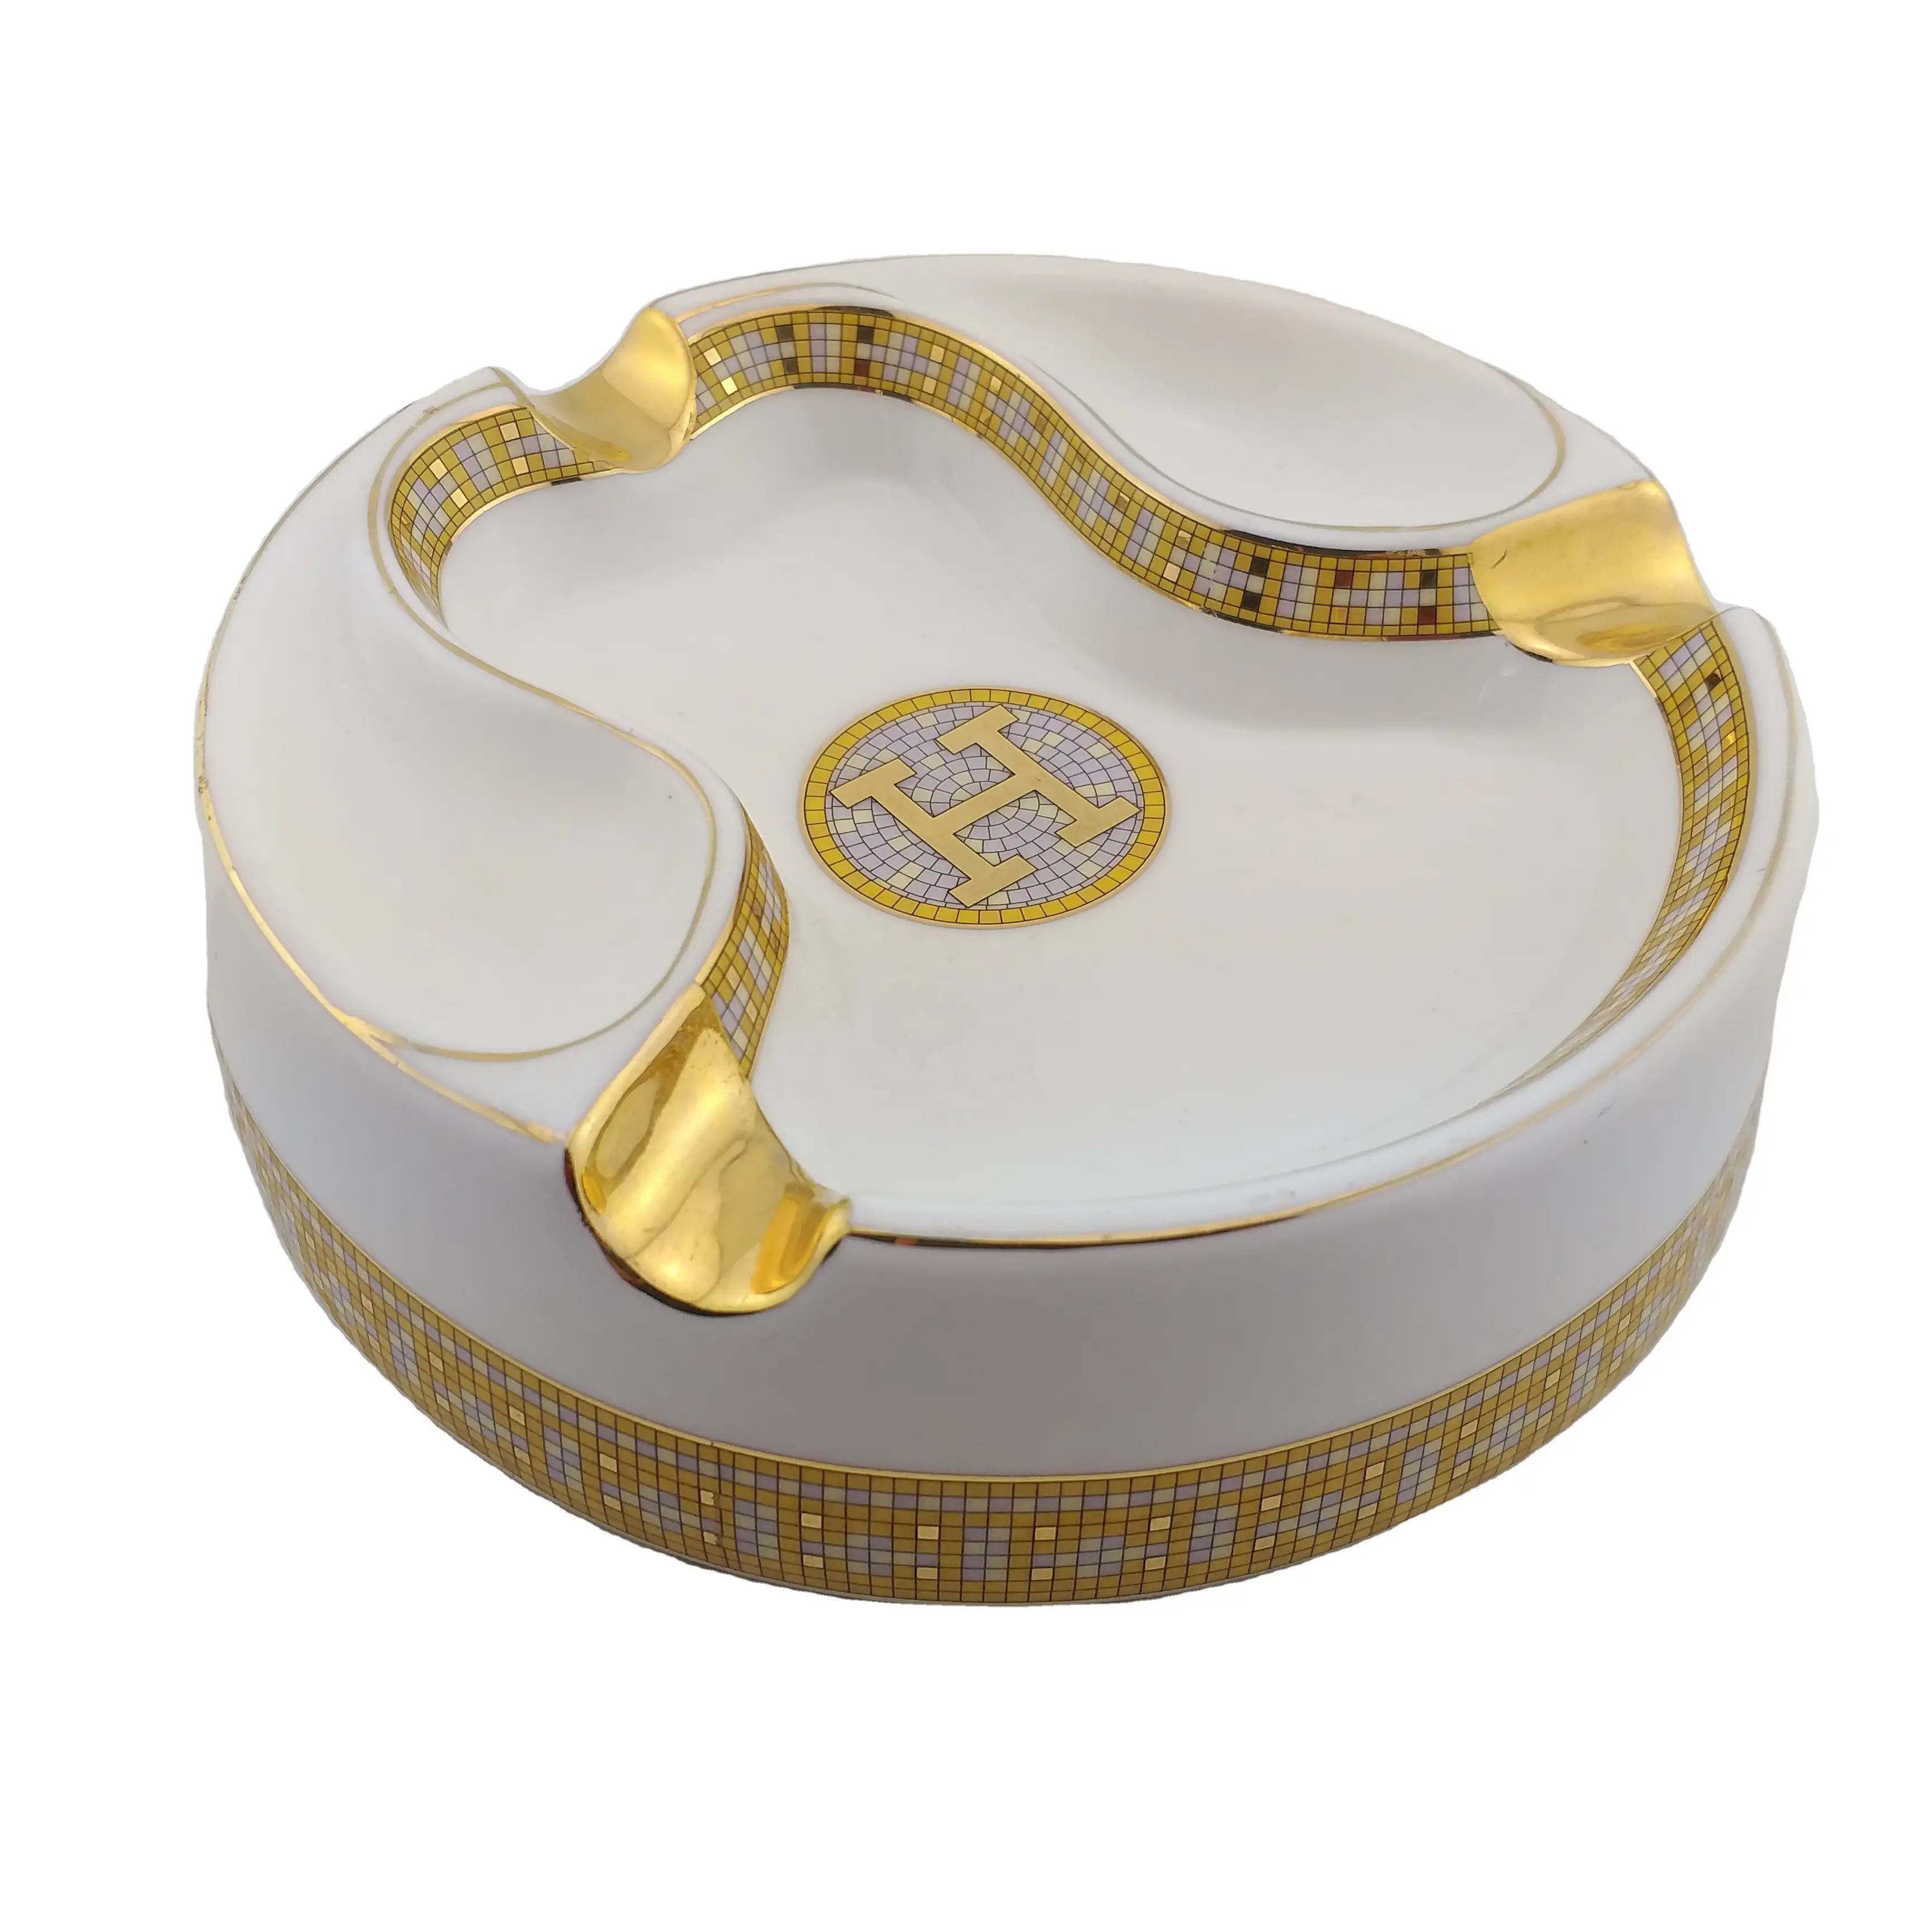 הנמכר ביותר נחמד עיצוב ייחודי עגול מותאם אישית קרמיקה סיגר מאפרה עם לוגו מותאם אישית עם זהב שאר